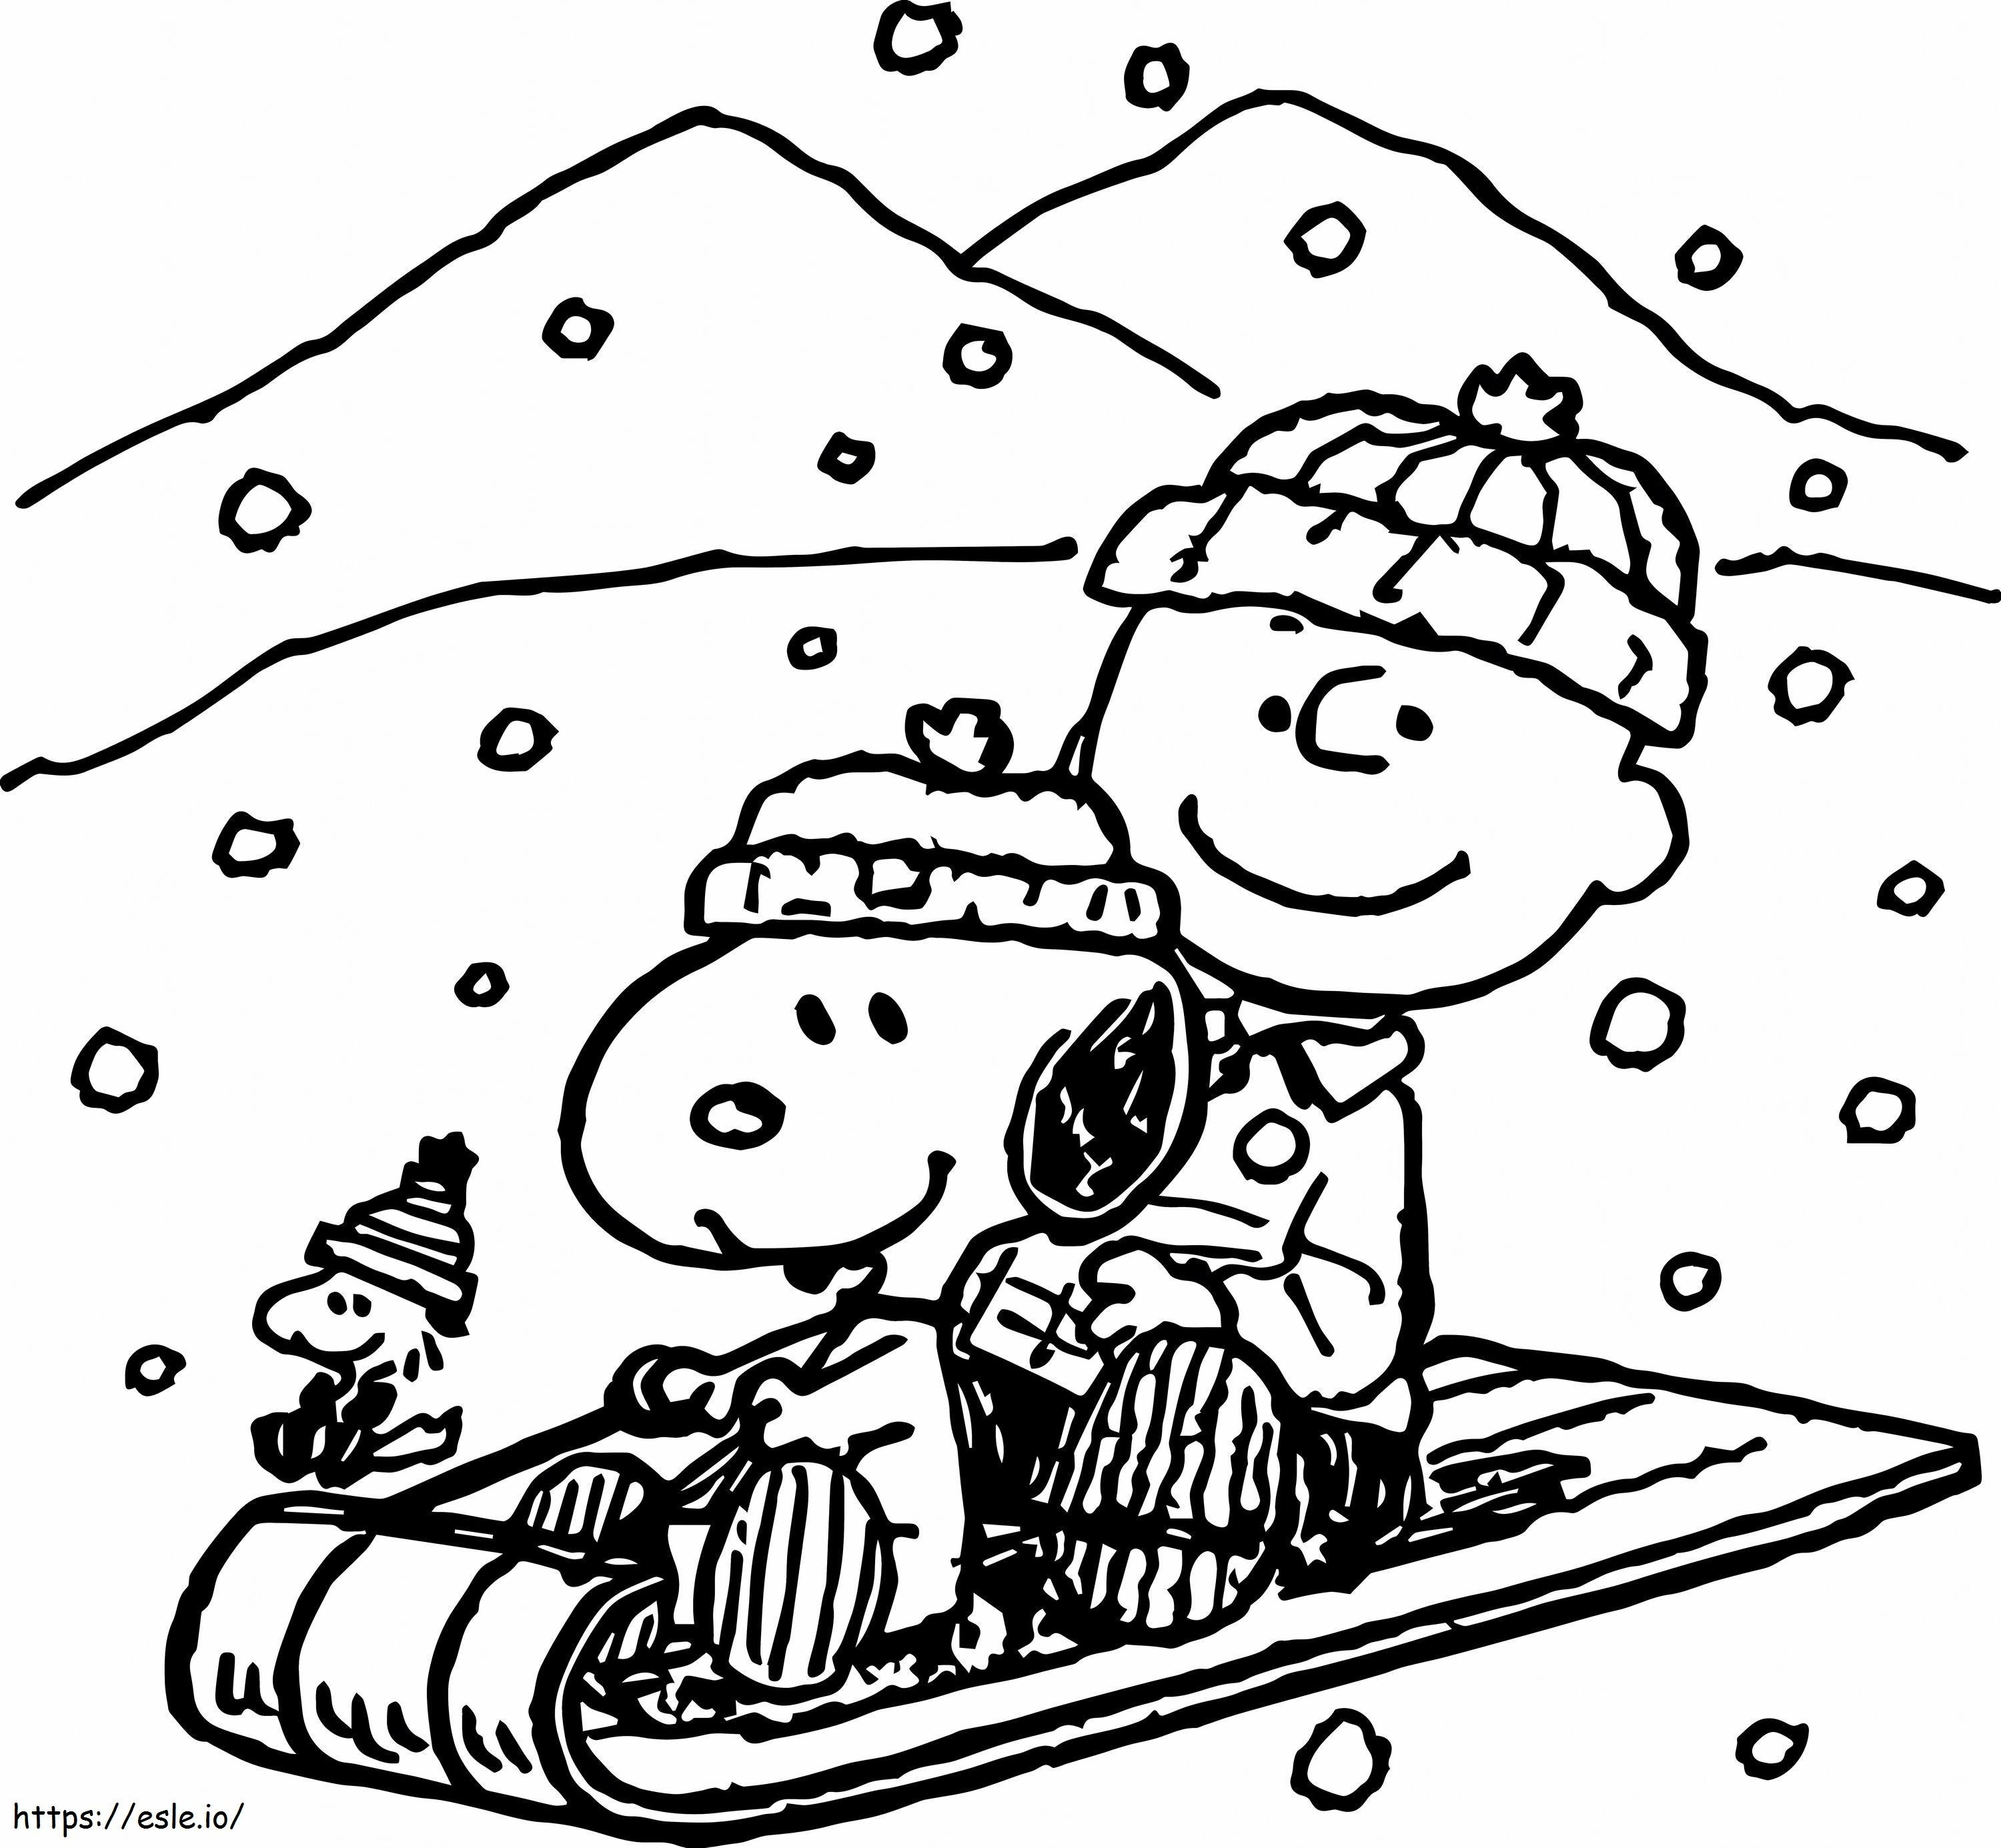 1539418009 Çocuklar İçin Snoopy Sayfaları Napisy Snoopy'de Harika Snoppy Acpra boyama